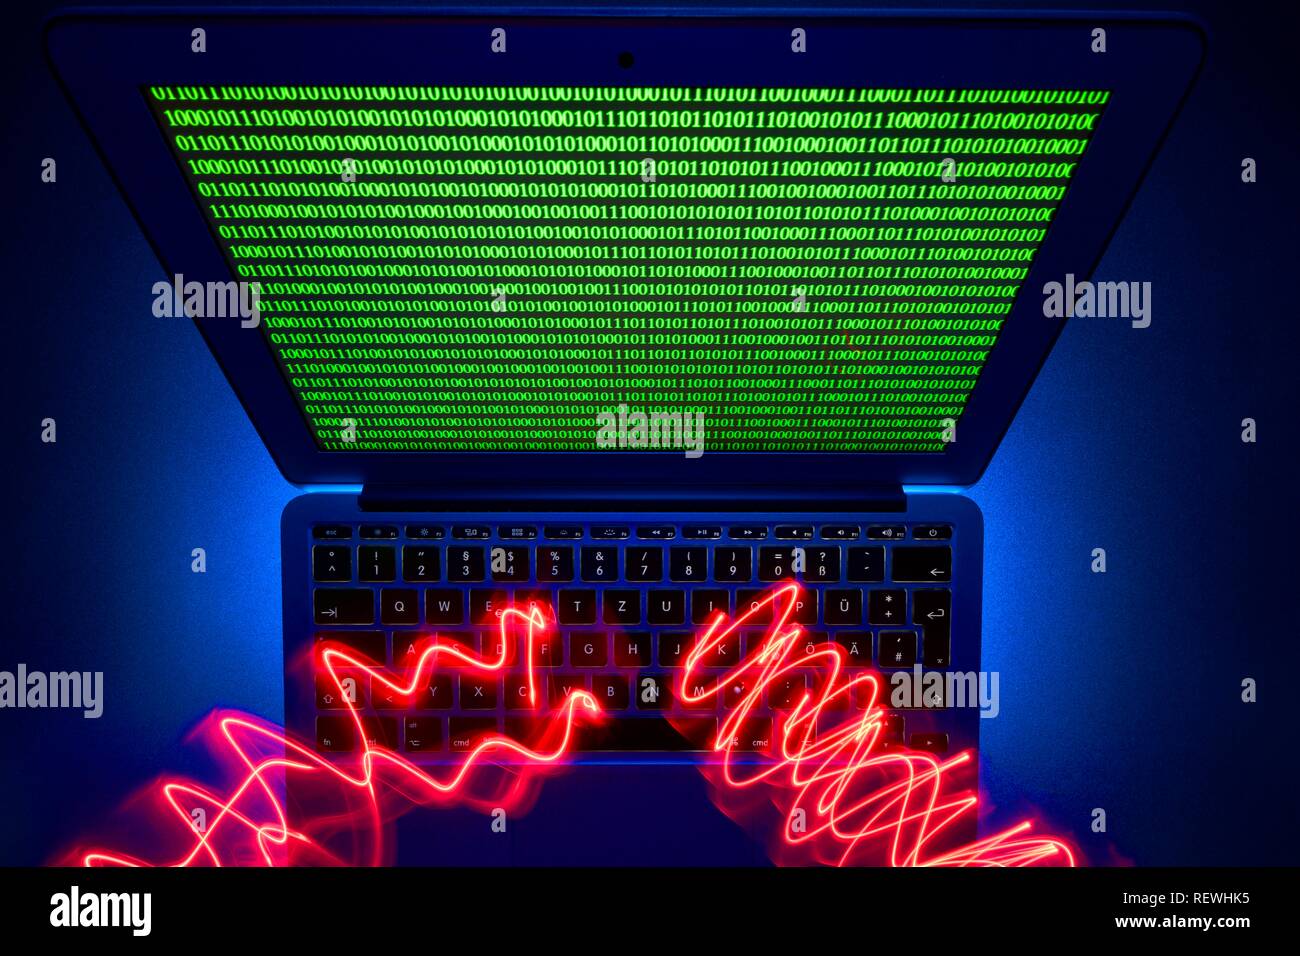 Traces de lumière sur le clavier de l'ordinateur, l'image symbole de la cybercriminalité, la criminalité informatique, la protection des données, Bade-Wurtemberg, Allemagne Banque D'Images